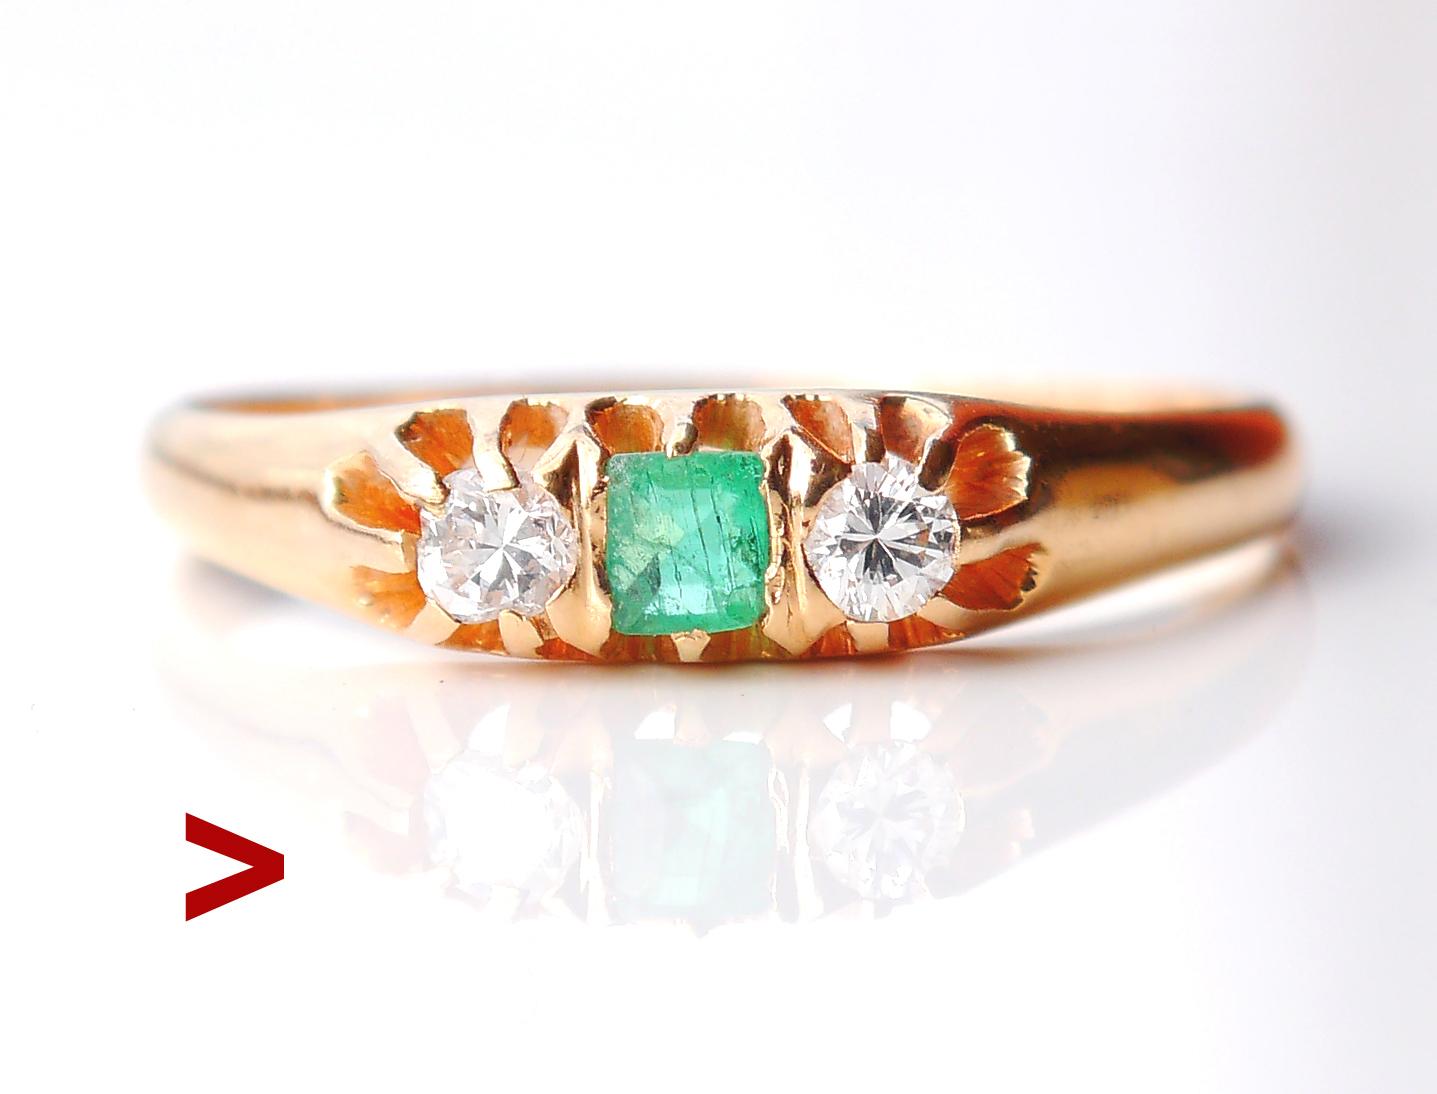 Ring mit Smaragd und Diamanten aus dem Jahr 1928.

Band aus massivem 18-karätigem Gelbgold mit Krallen, die einen natürlichen 3,5 mm x 2,5 mm / ca.0,15 ct Smaragdstein halten, akzentuiert von zwei Diamanten mit unregelmäßigem altem Diamantschliff Ø